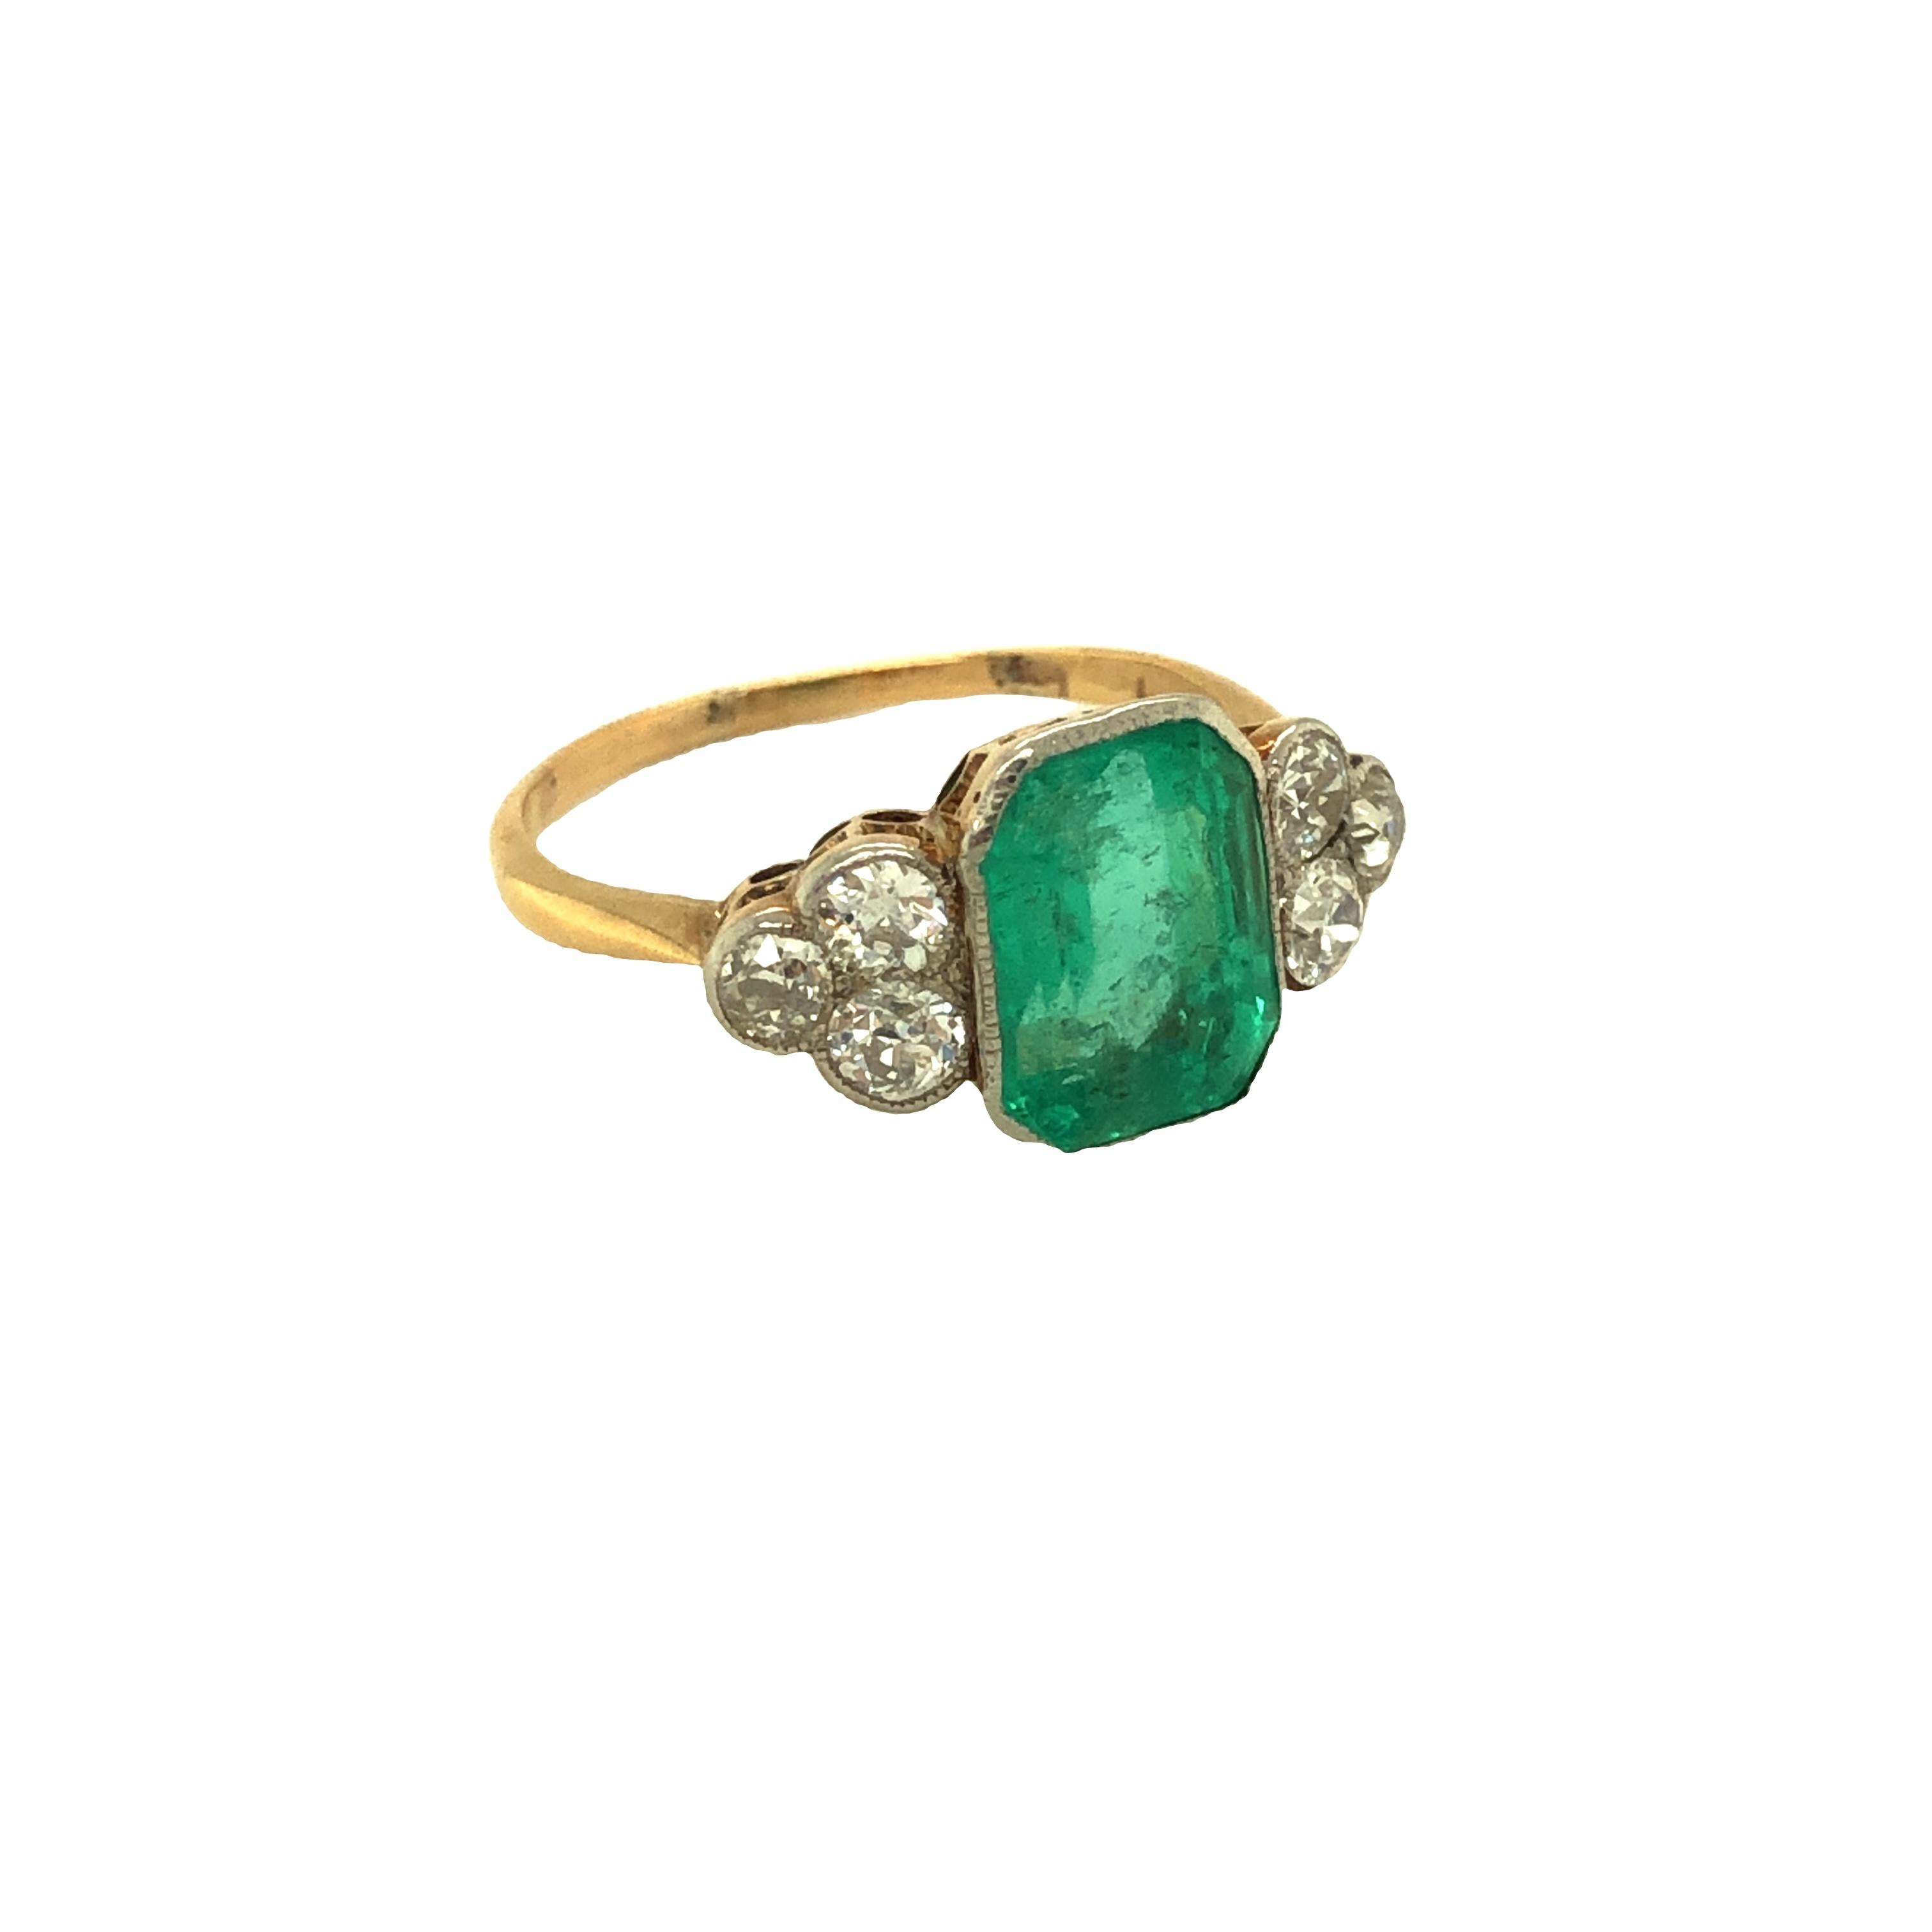 Dieser originelle antike Art-Déco-Ring zeigt einen sattgrünen achteckigen Smaragd im Stufenschliff mit einem Gewicht von etwa 3 Karat (9,45 x 7,20 x 5,12 mm).  Der Ring ist auf jeder Seite mit einer Maserung versehen und wird auf jeder Seite von